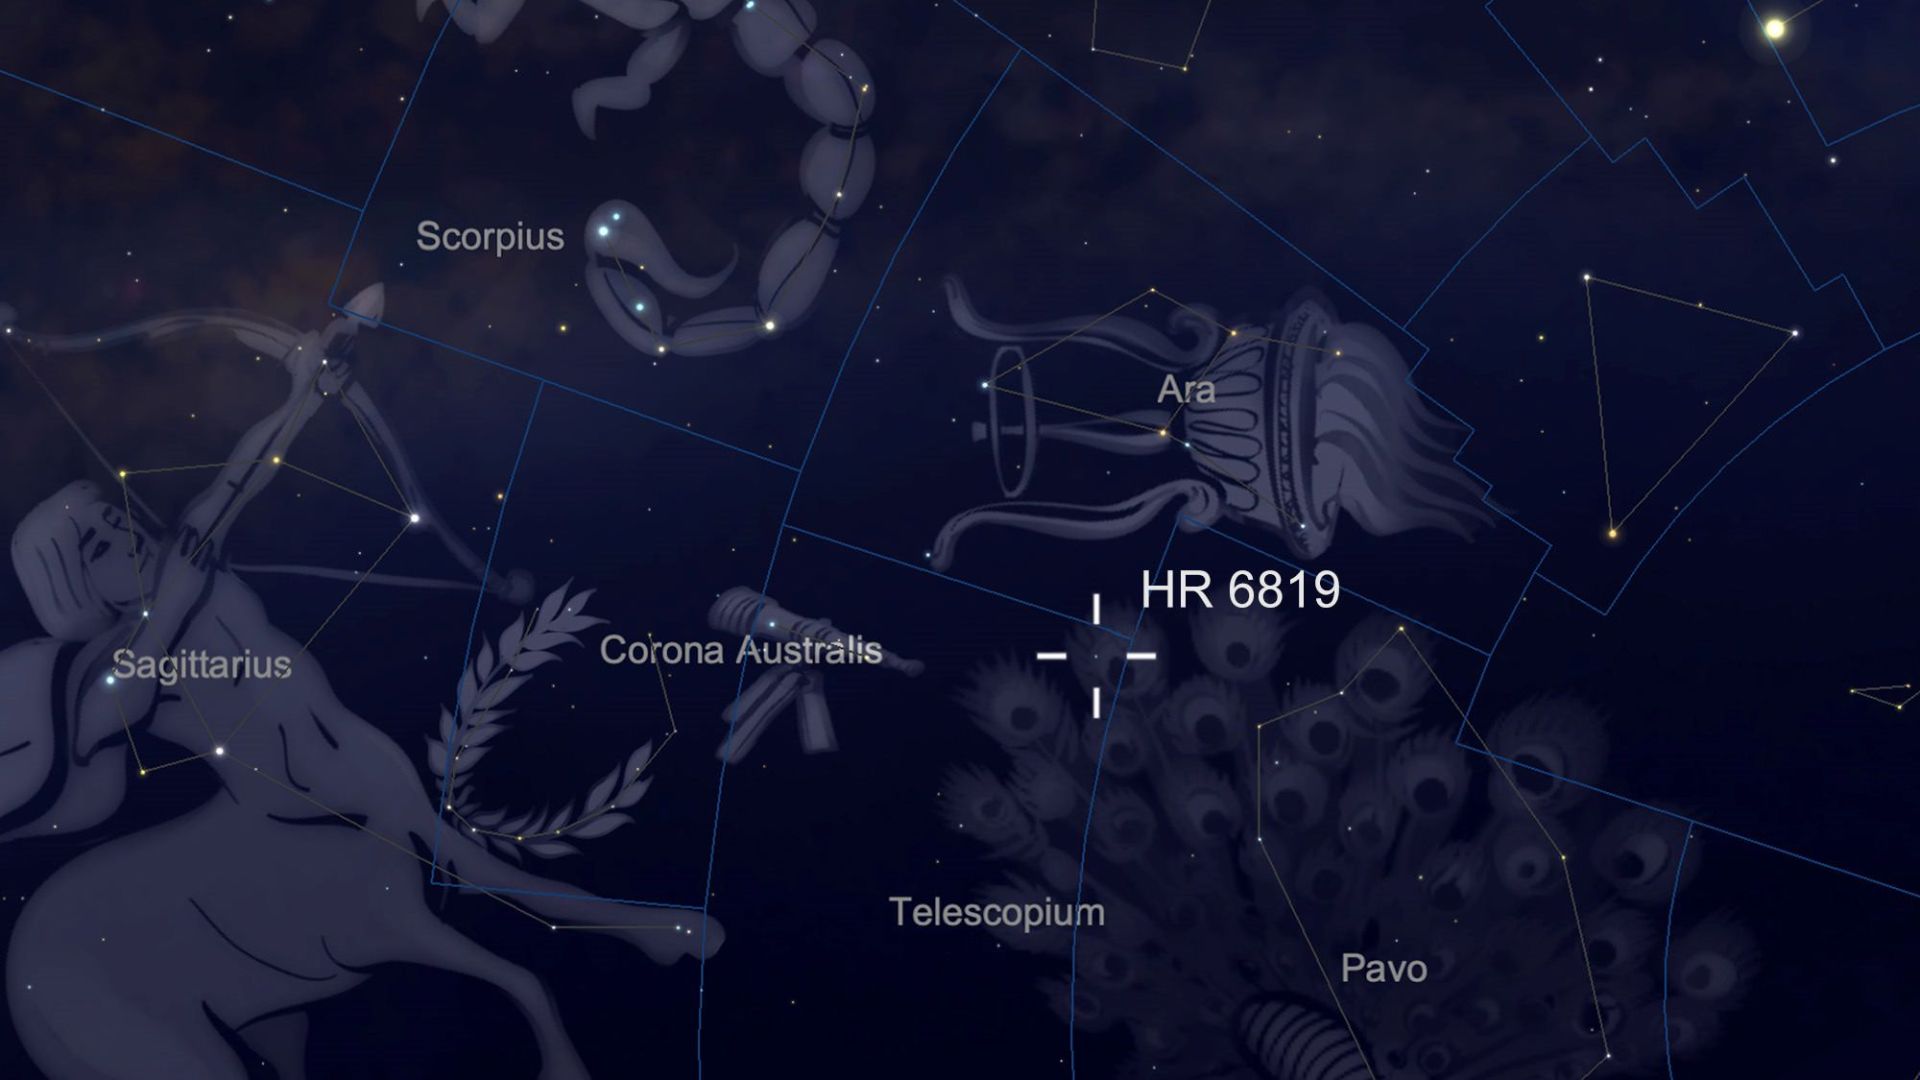 مرجع متخصصين ايران منظومه HR 6819 در آسمان شب